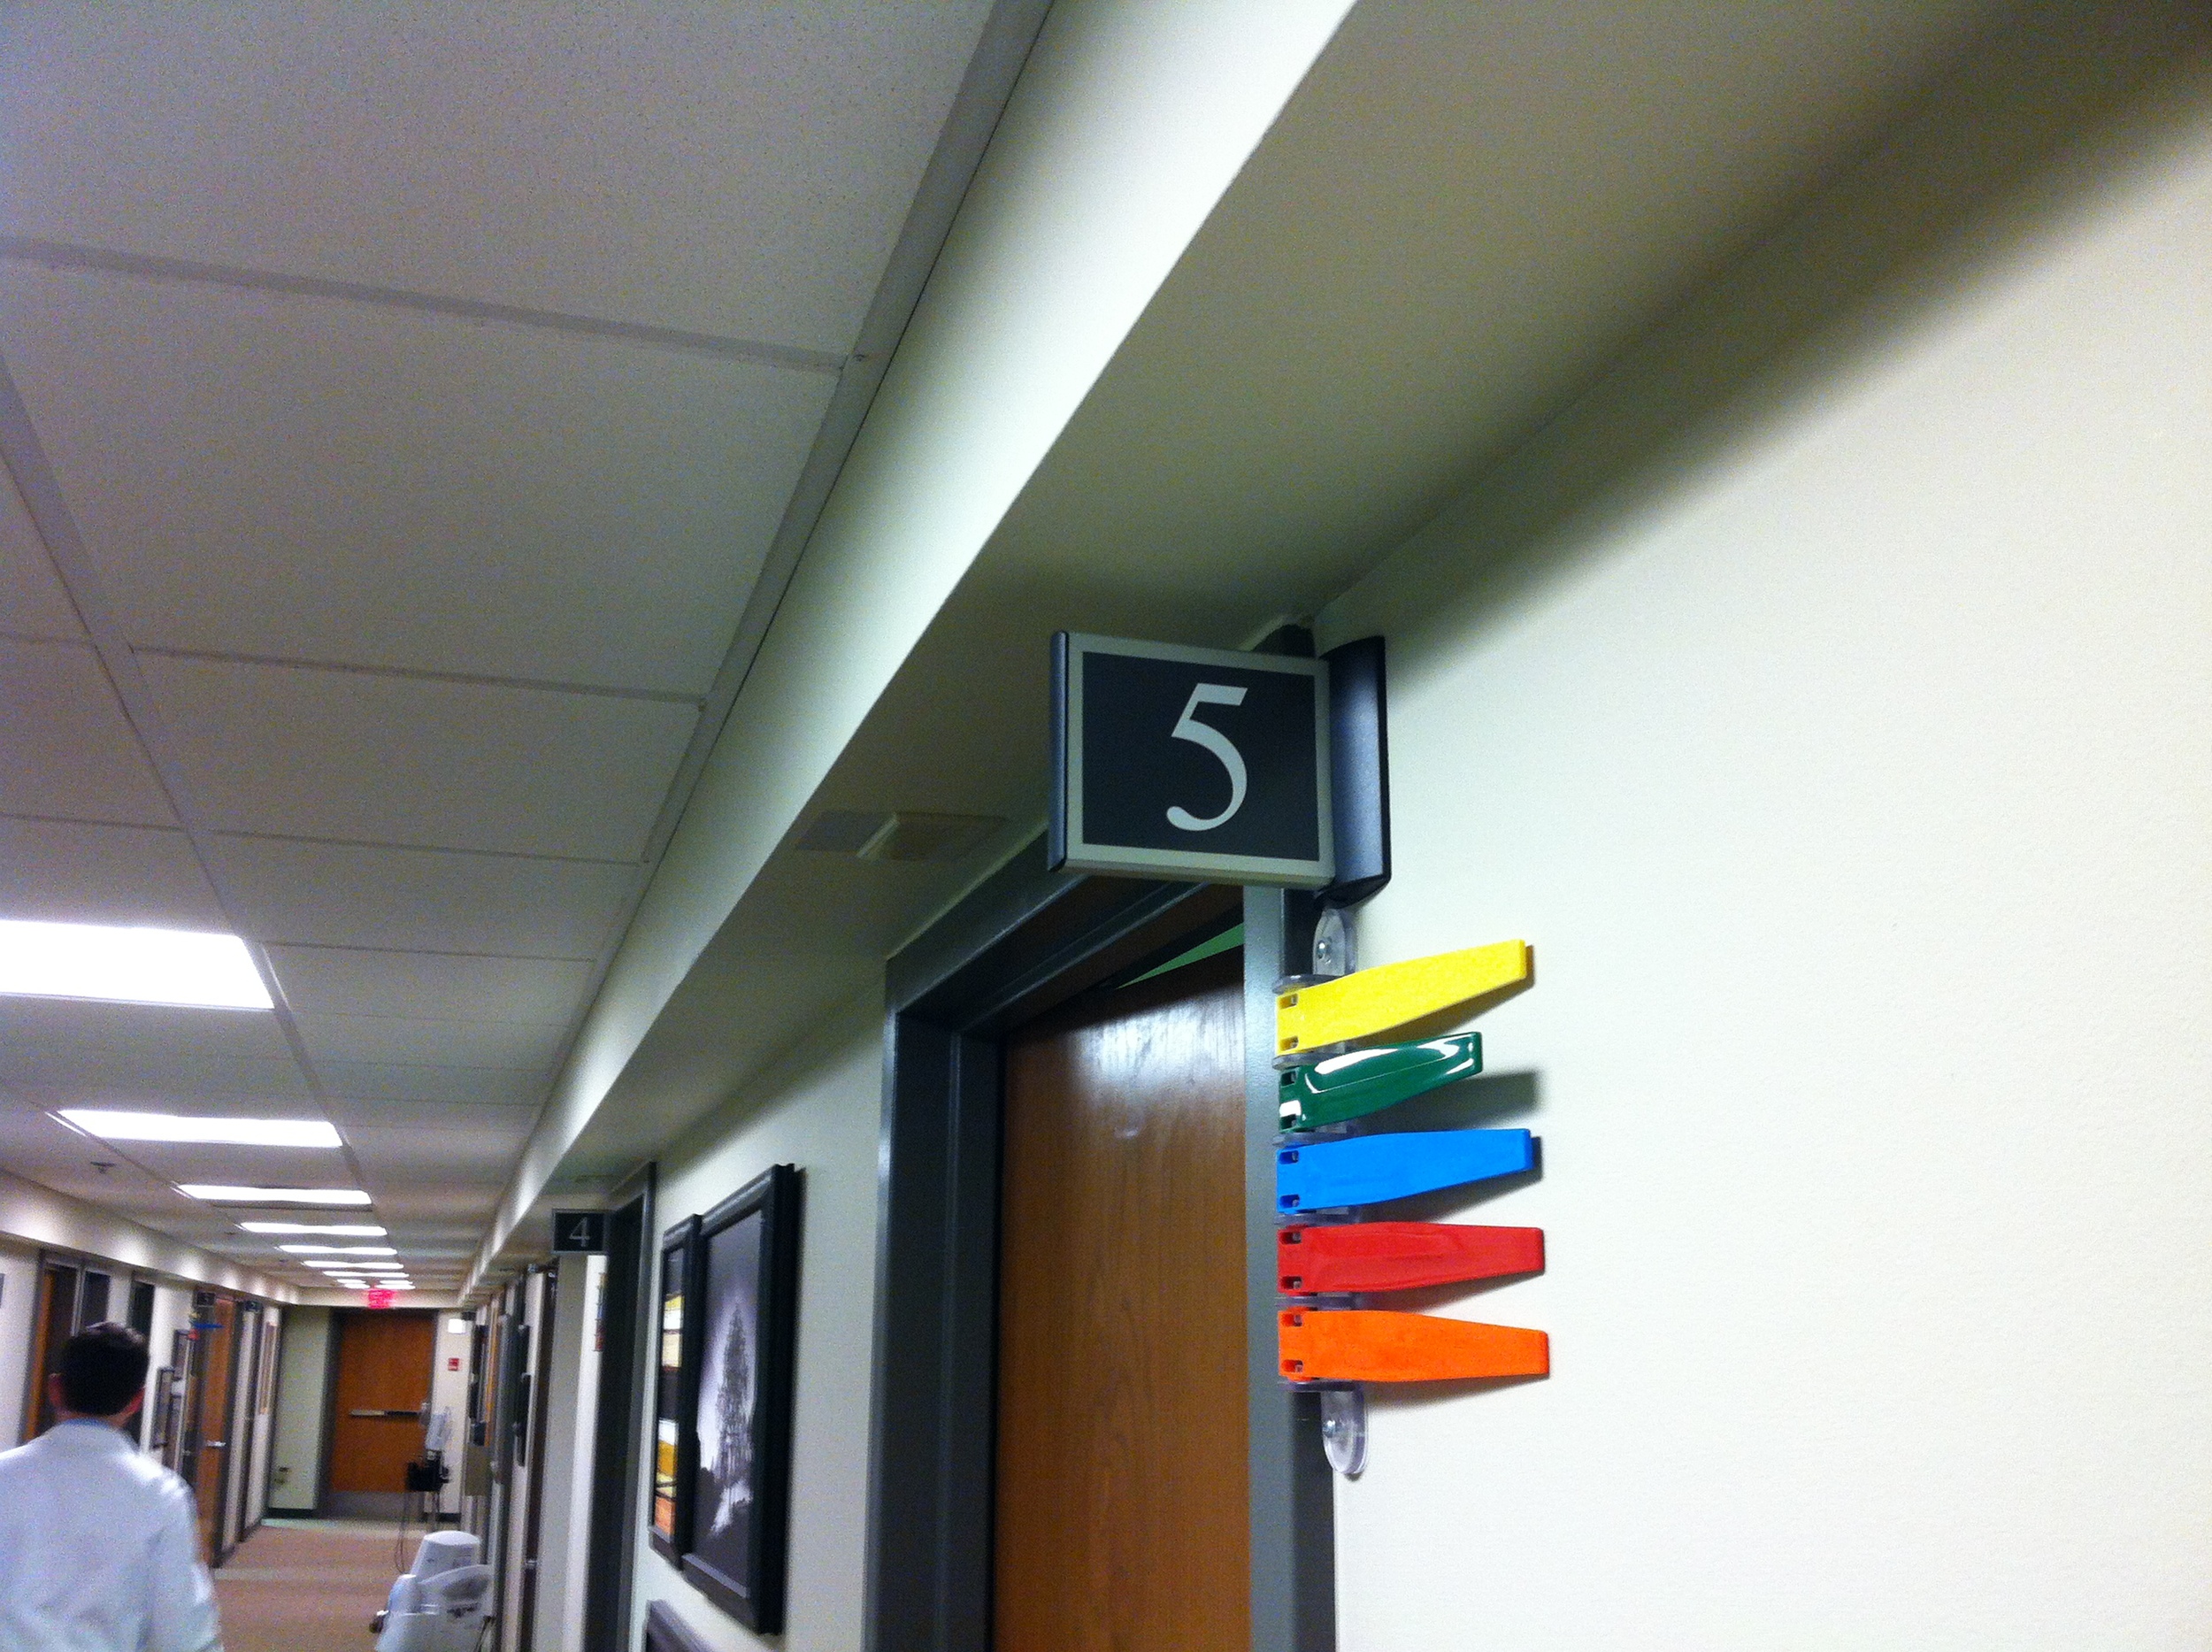 Springer Exam Room Sign.JPG